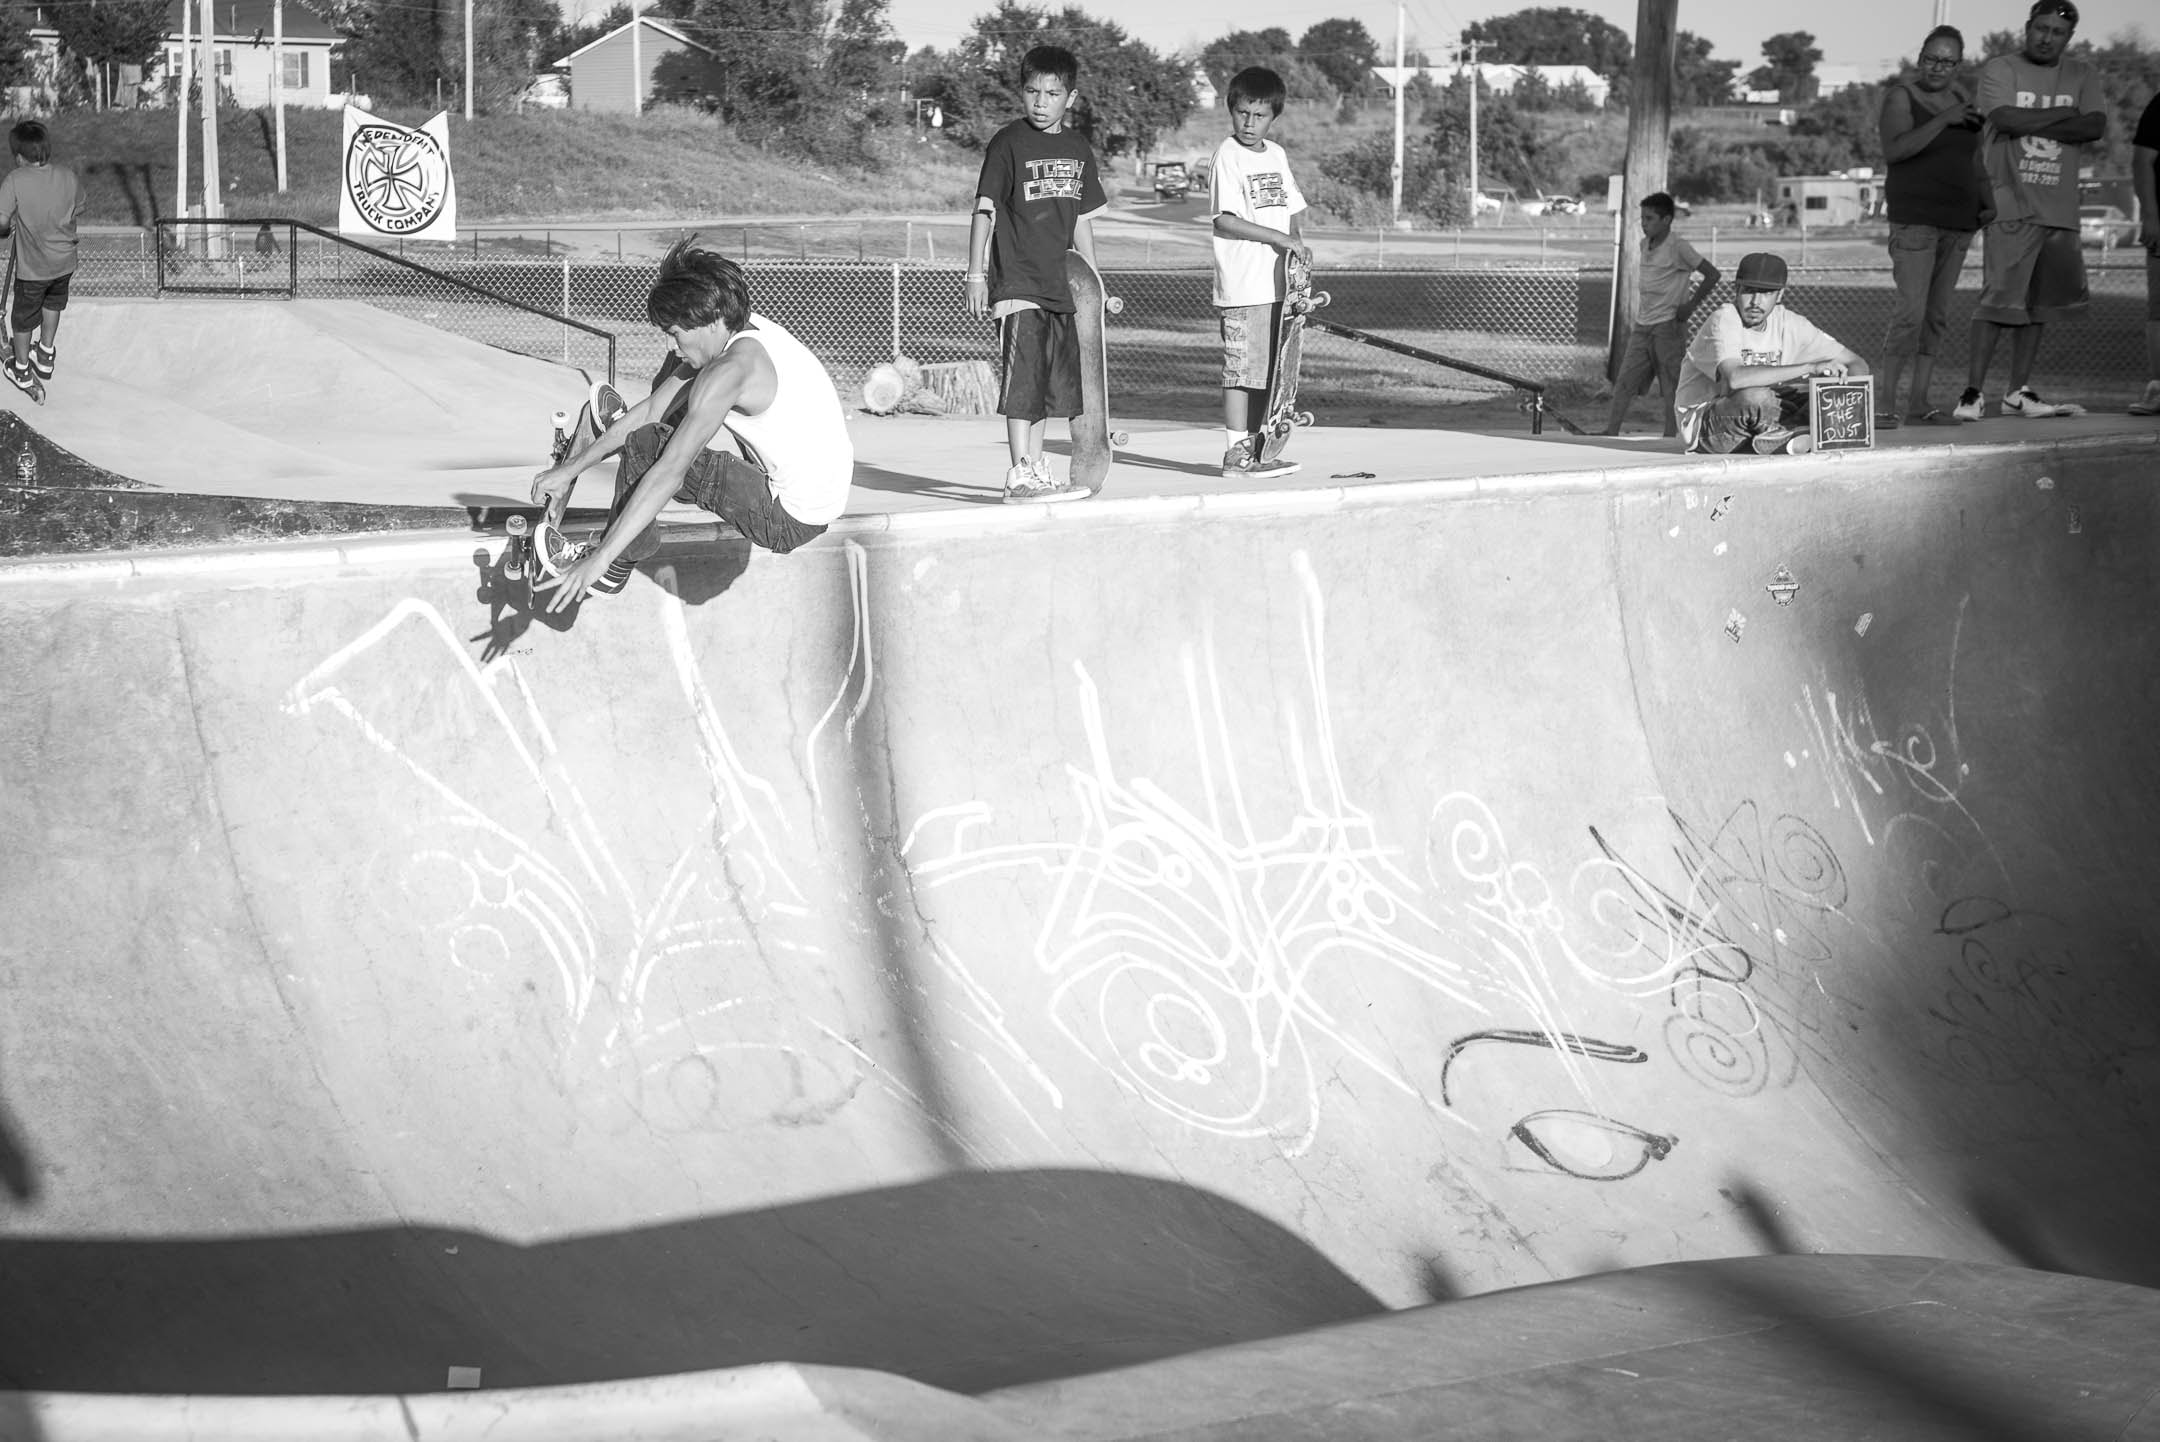 IN PHOTOS -- Skateboarding In Pine Ridge